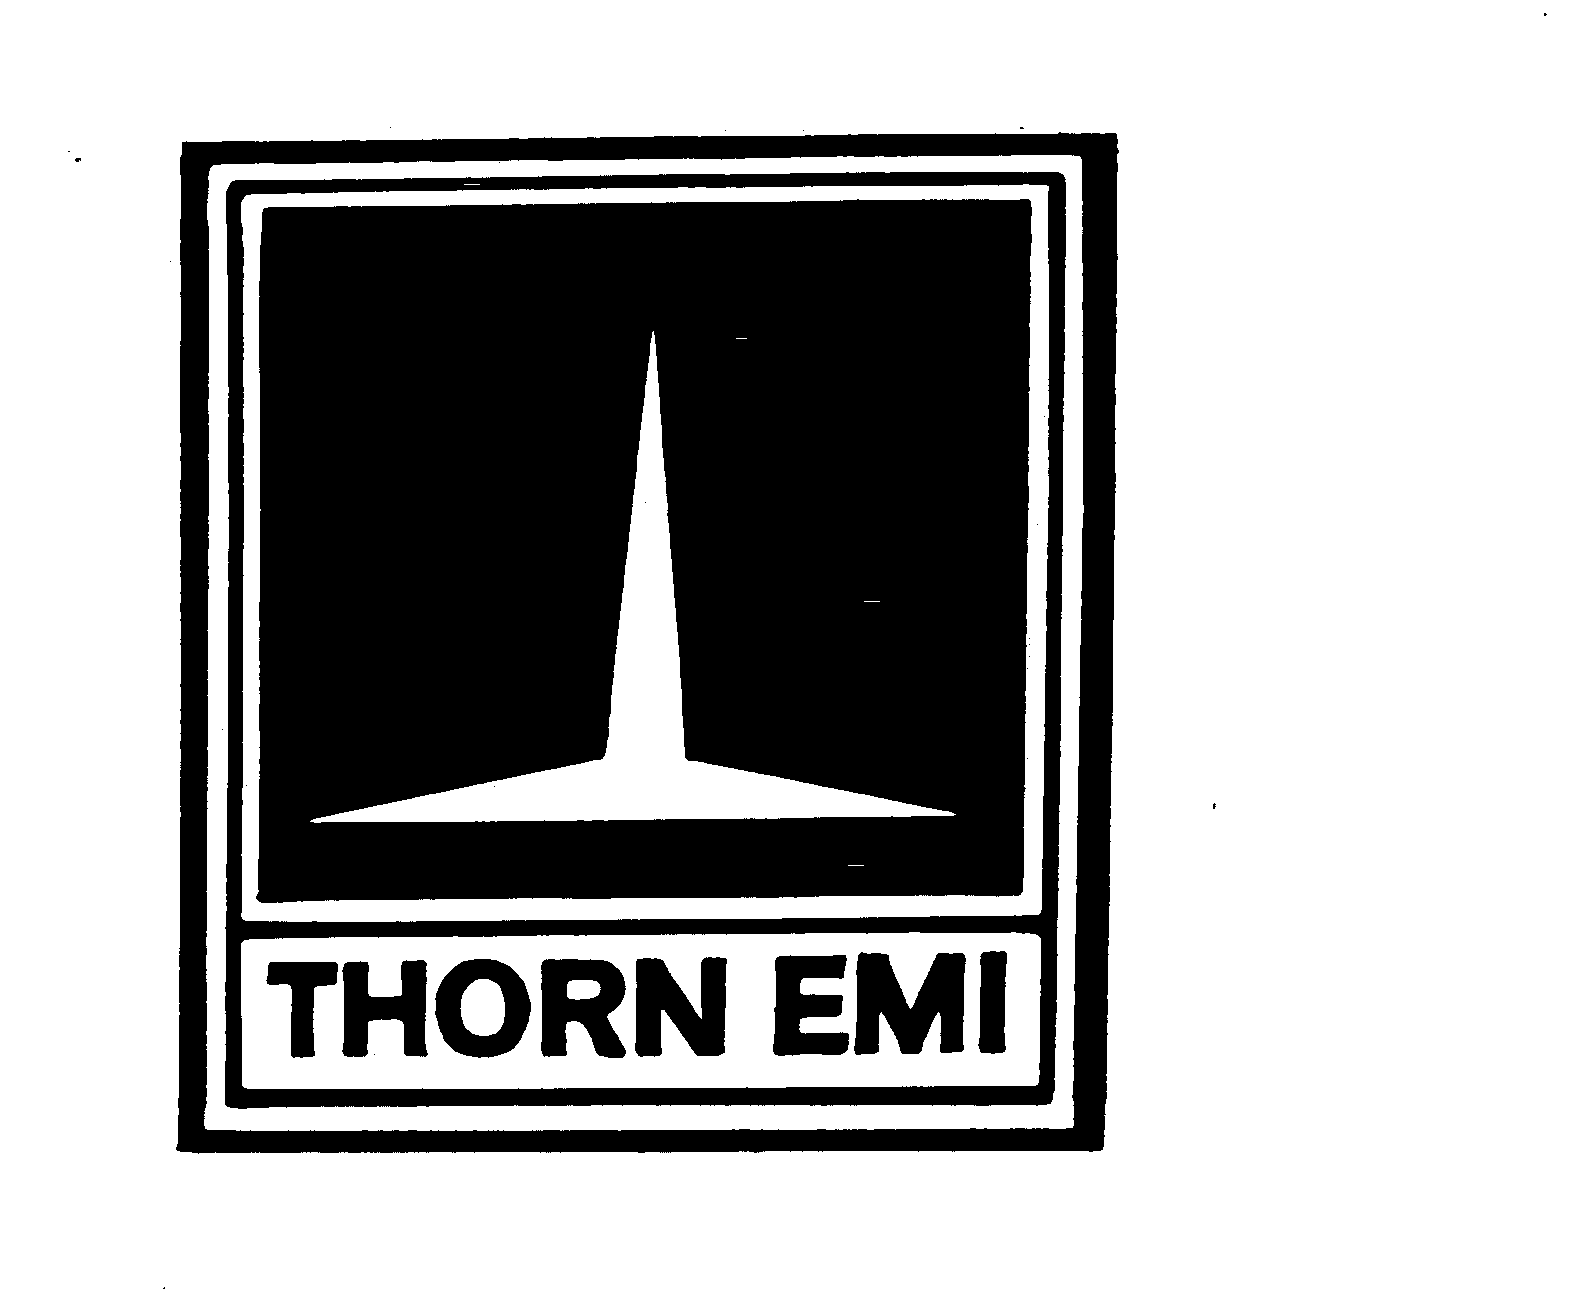  THORN EMI